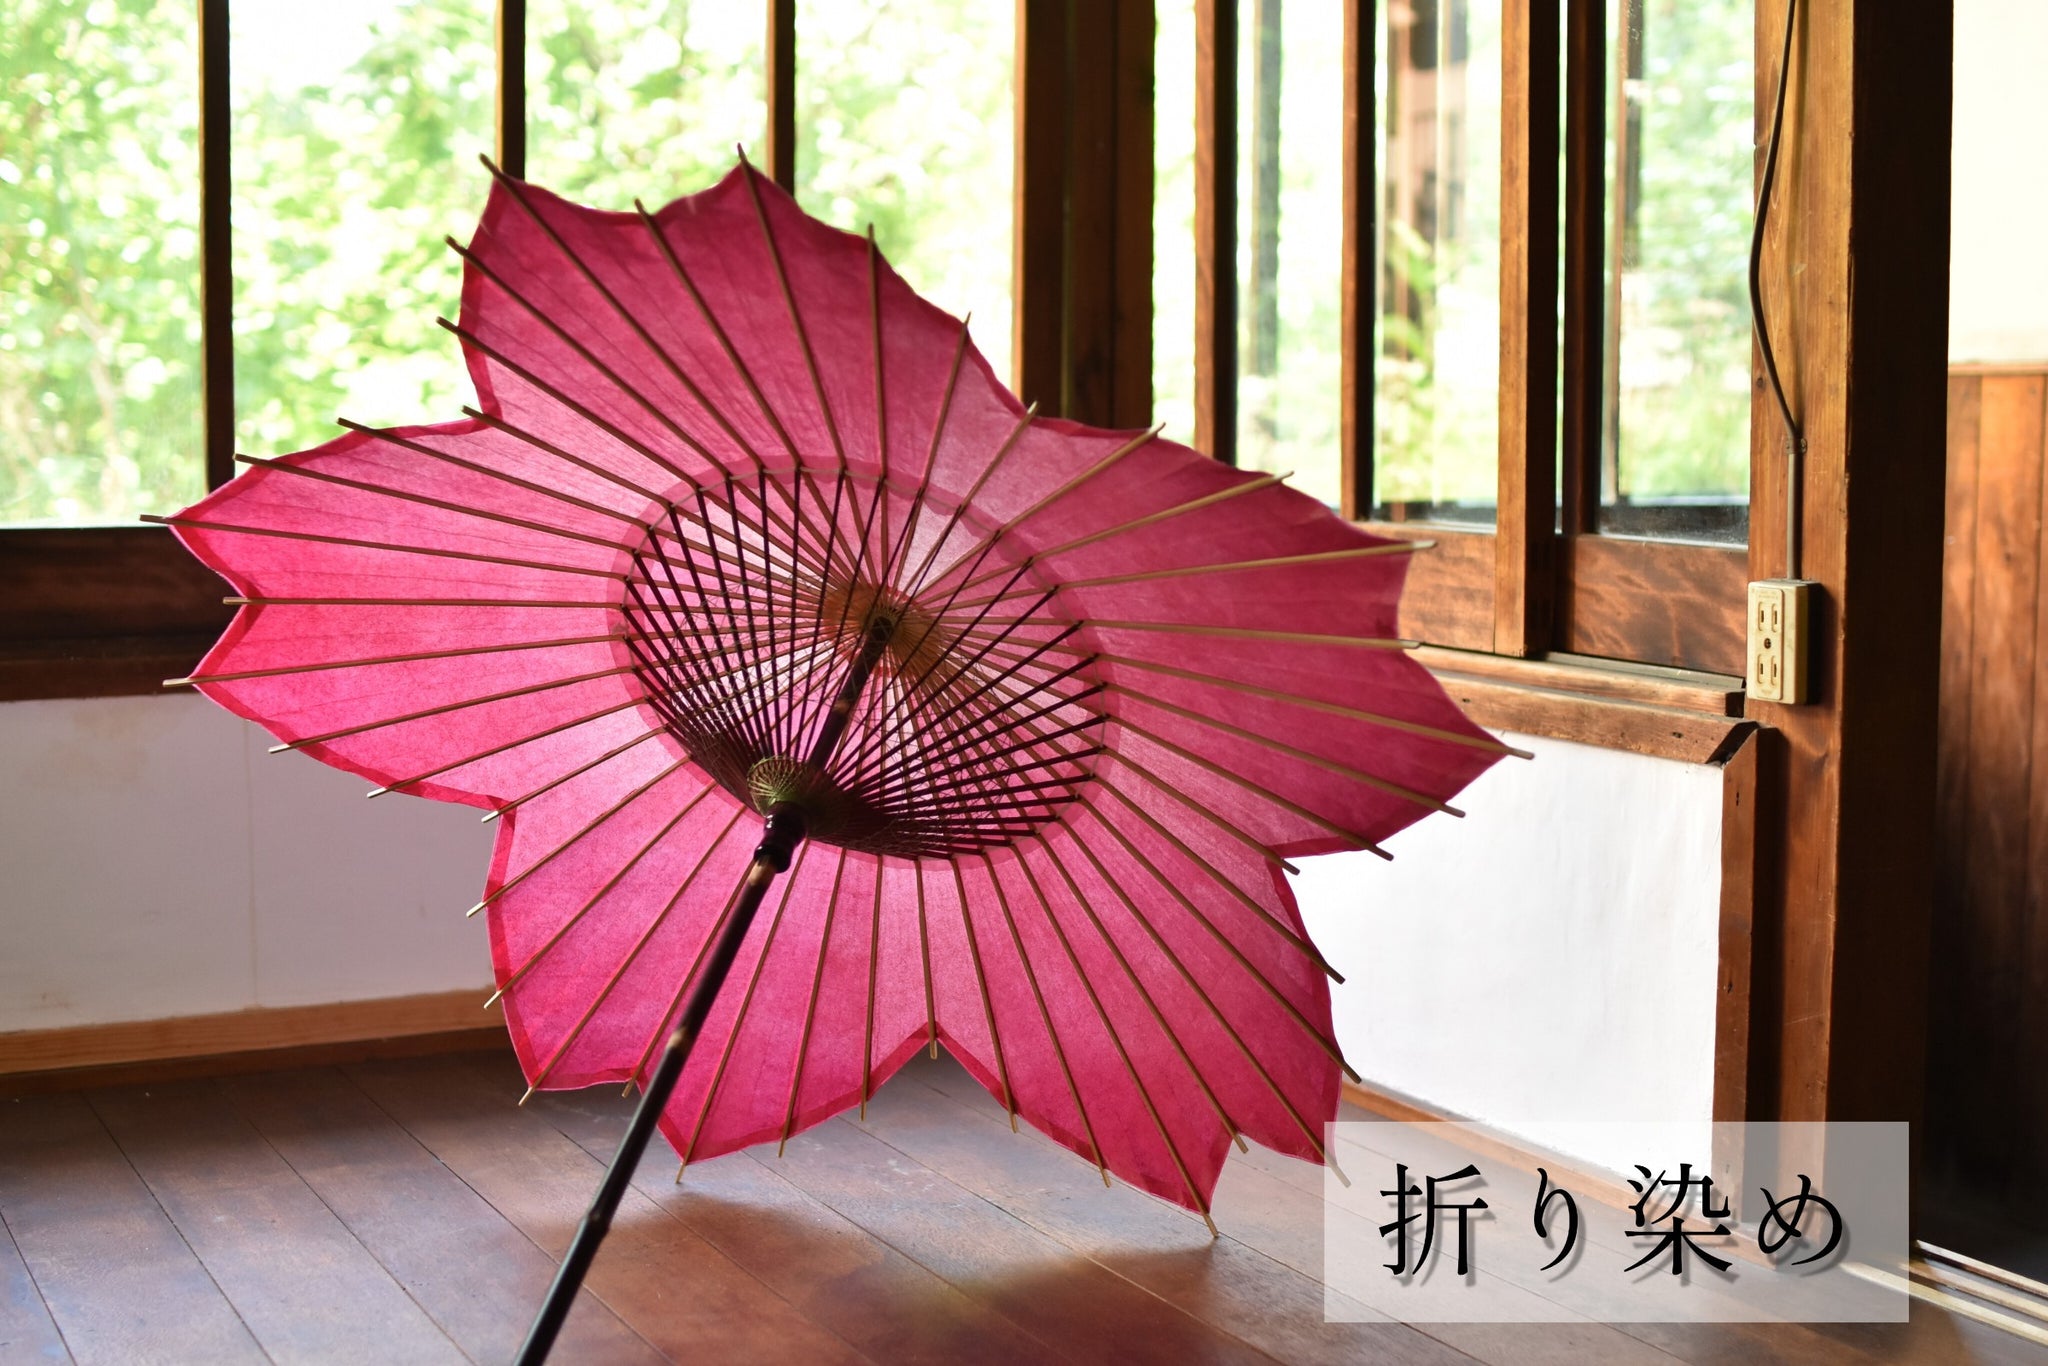 Paragüero de plástico para paraguas, de estilo japonés, puede almacenar 9  paraguas largo, 6 paraguas corto, para puerta de pasillo